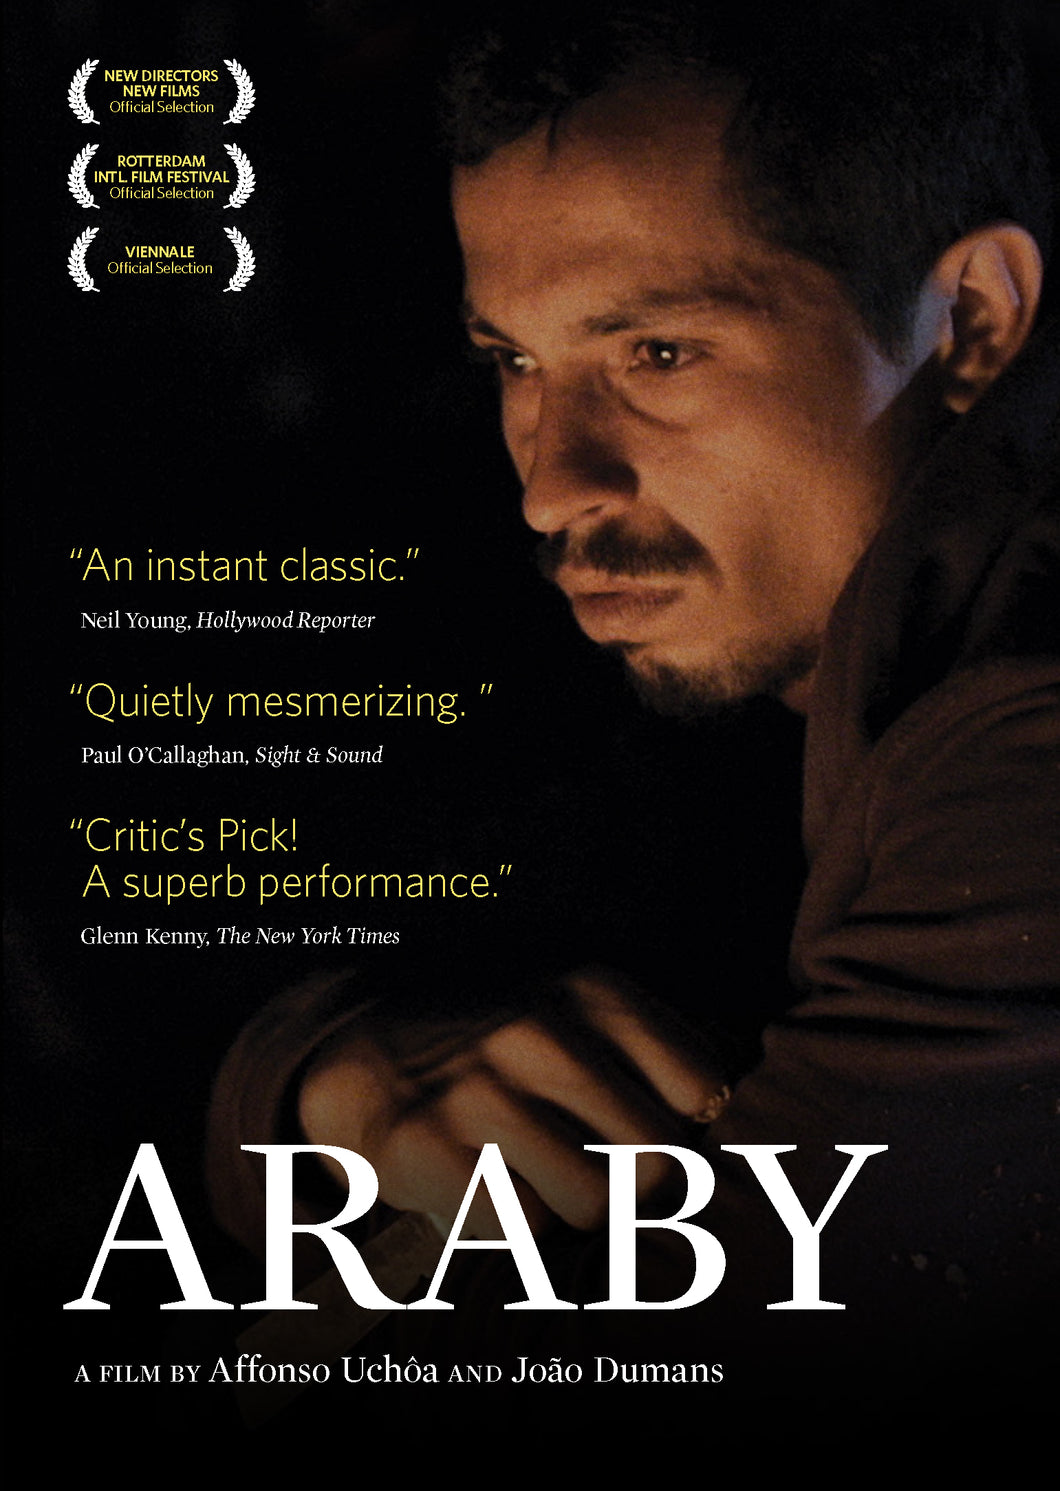 ARABY [DVD]